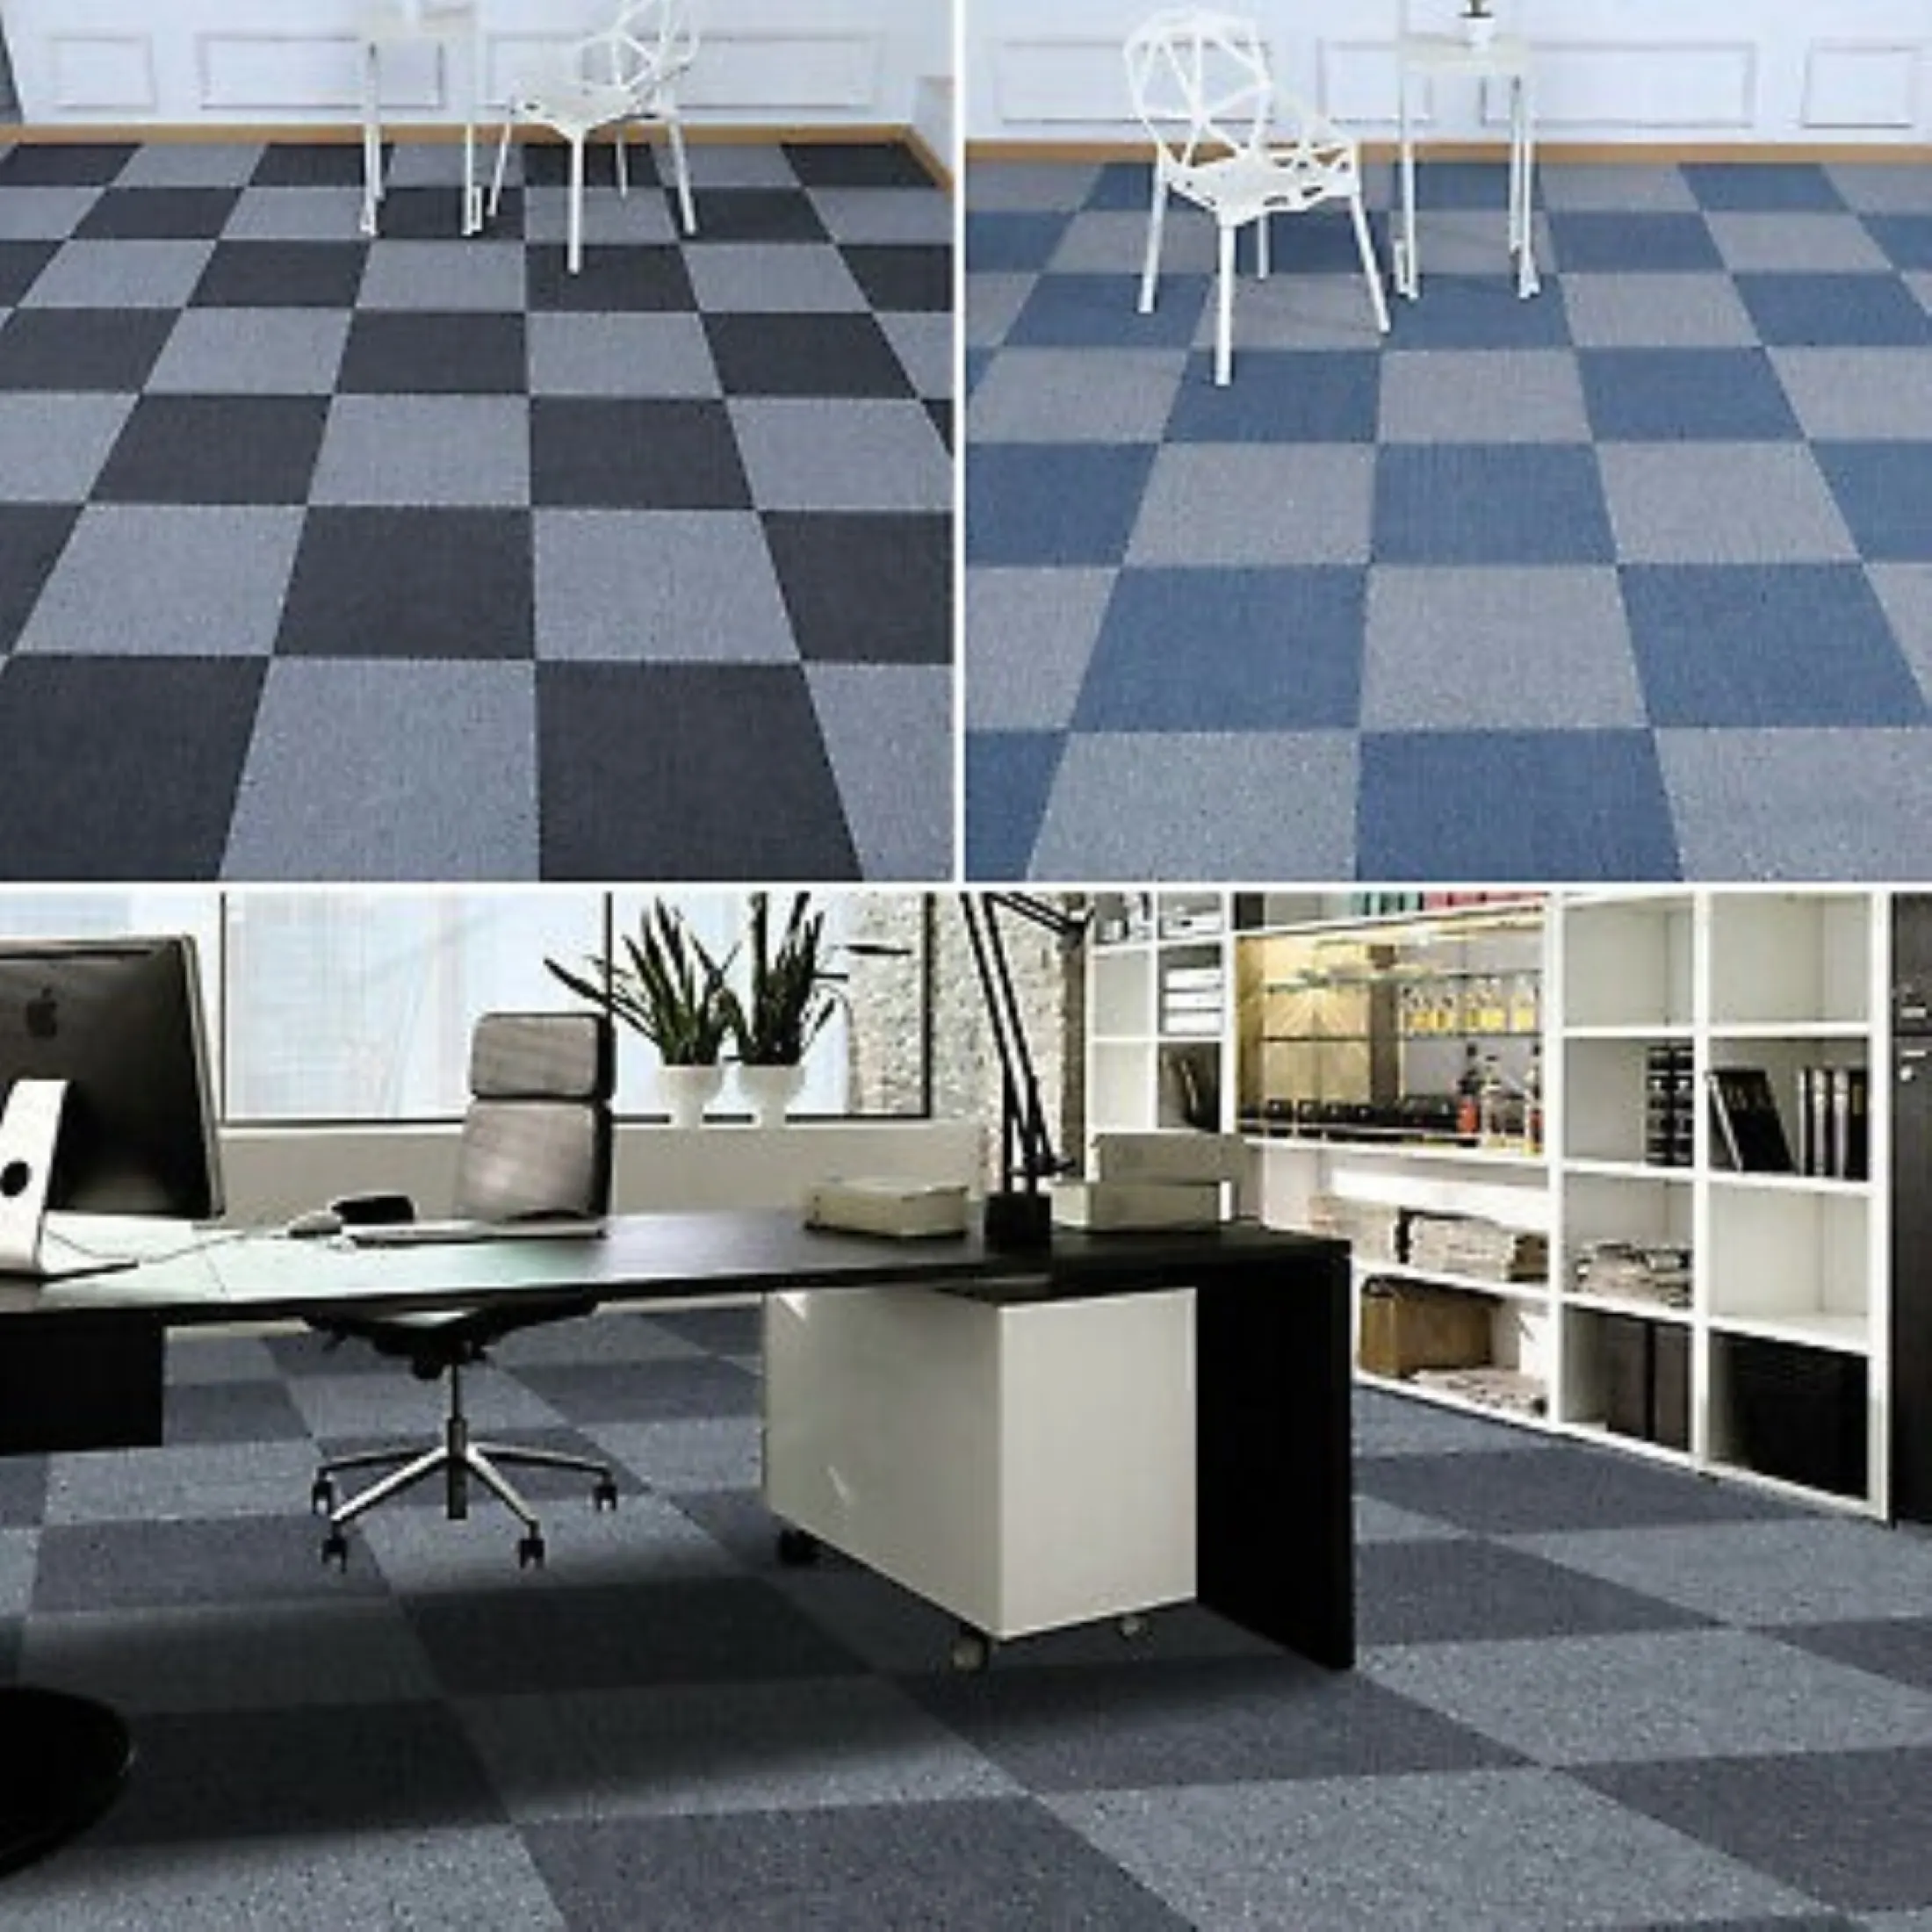 Office Floor Mats Rug Carpet Tiles, Rug Slip Prevention